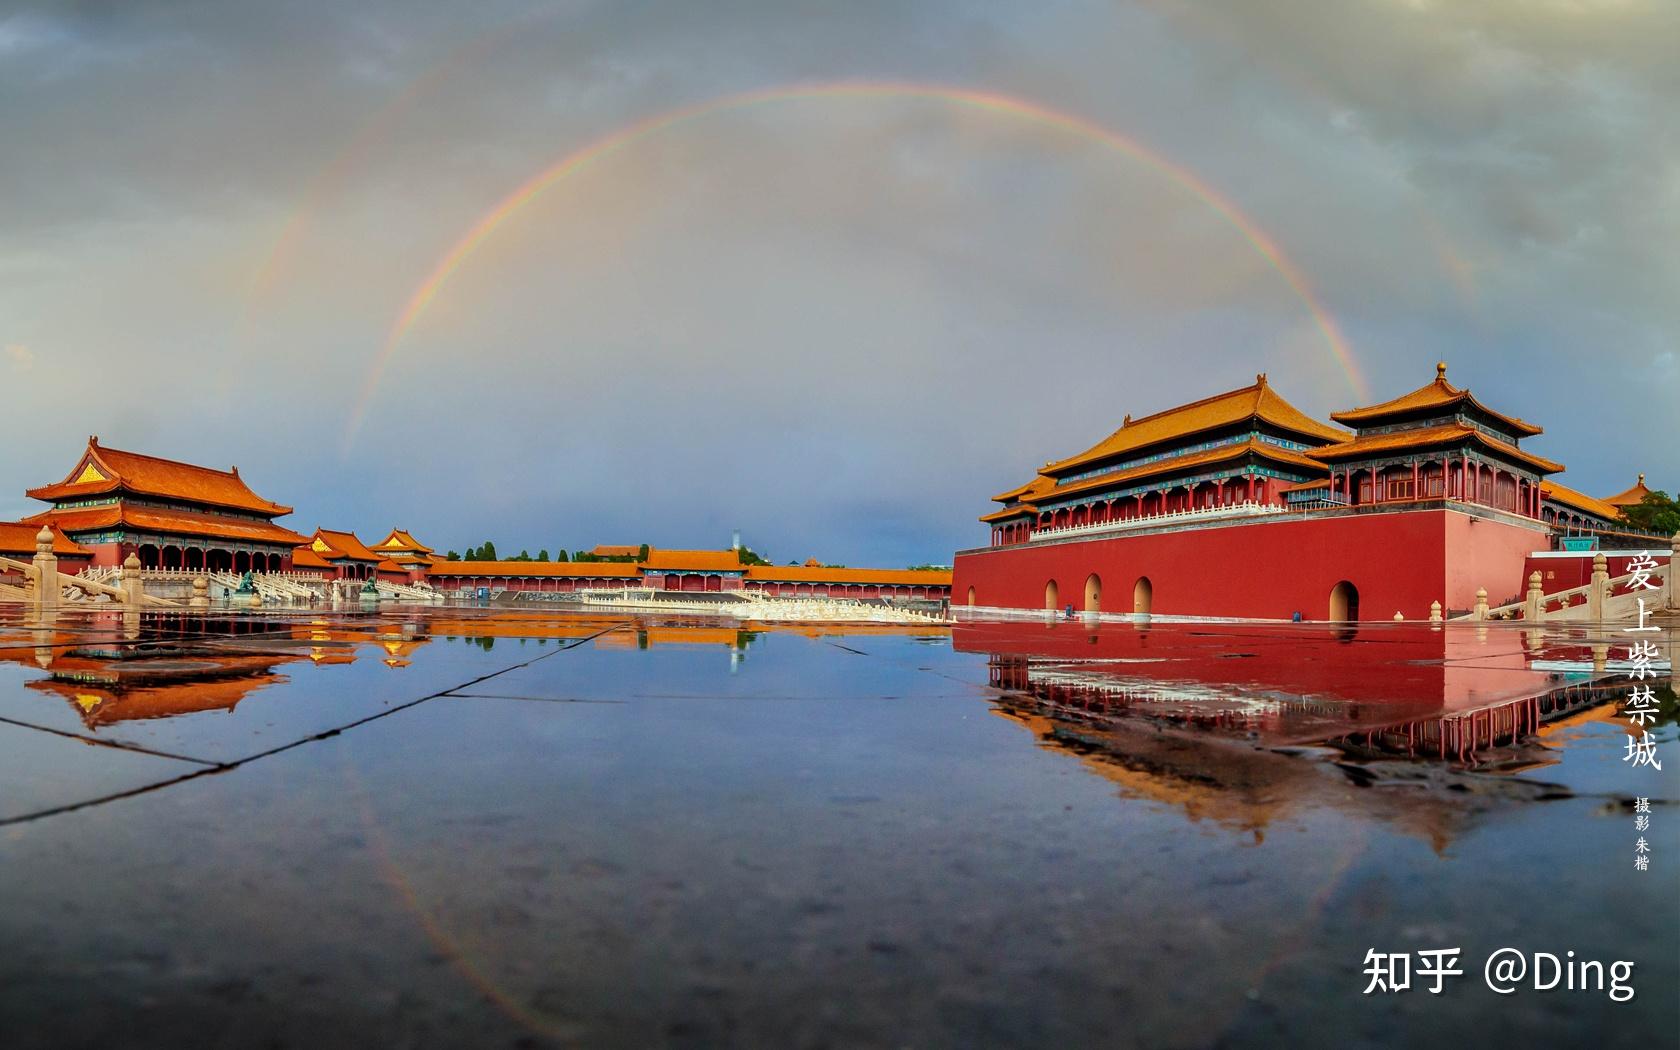 北京故宫有什么特色景点和建筑物?